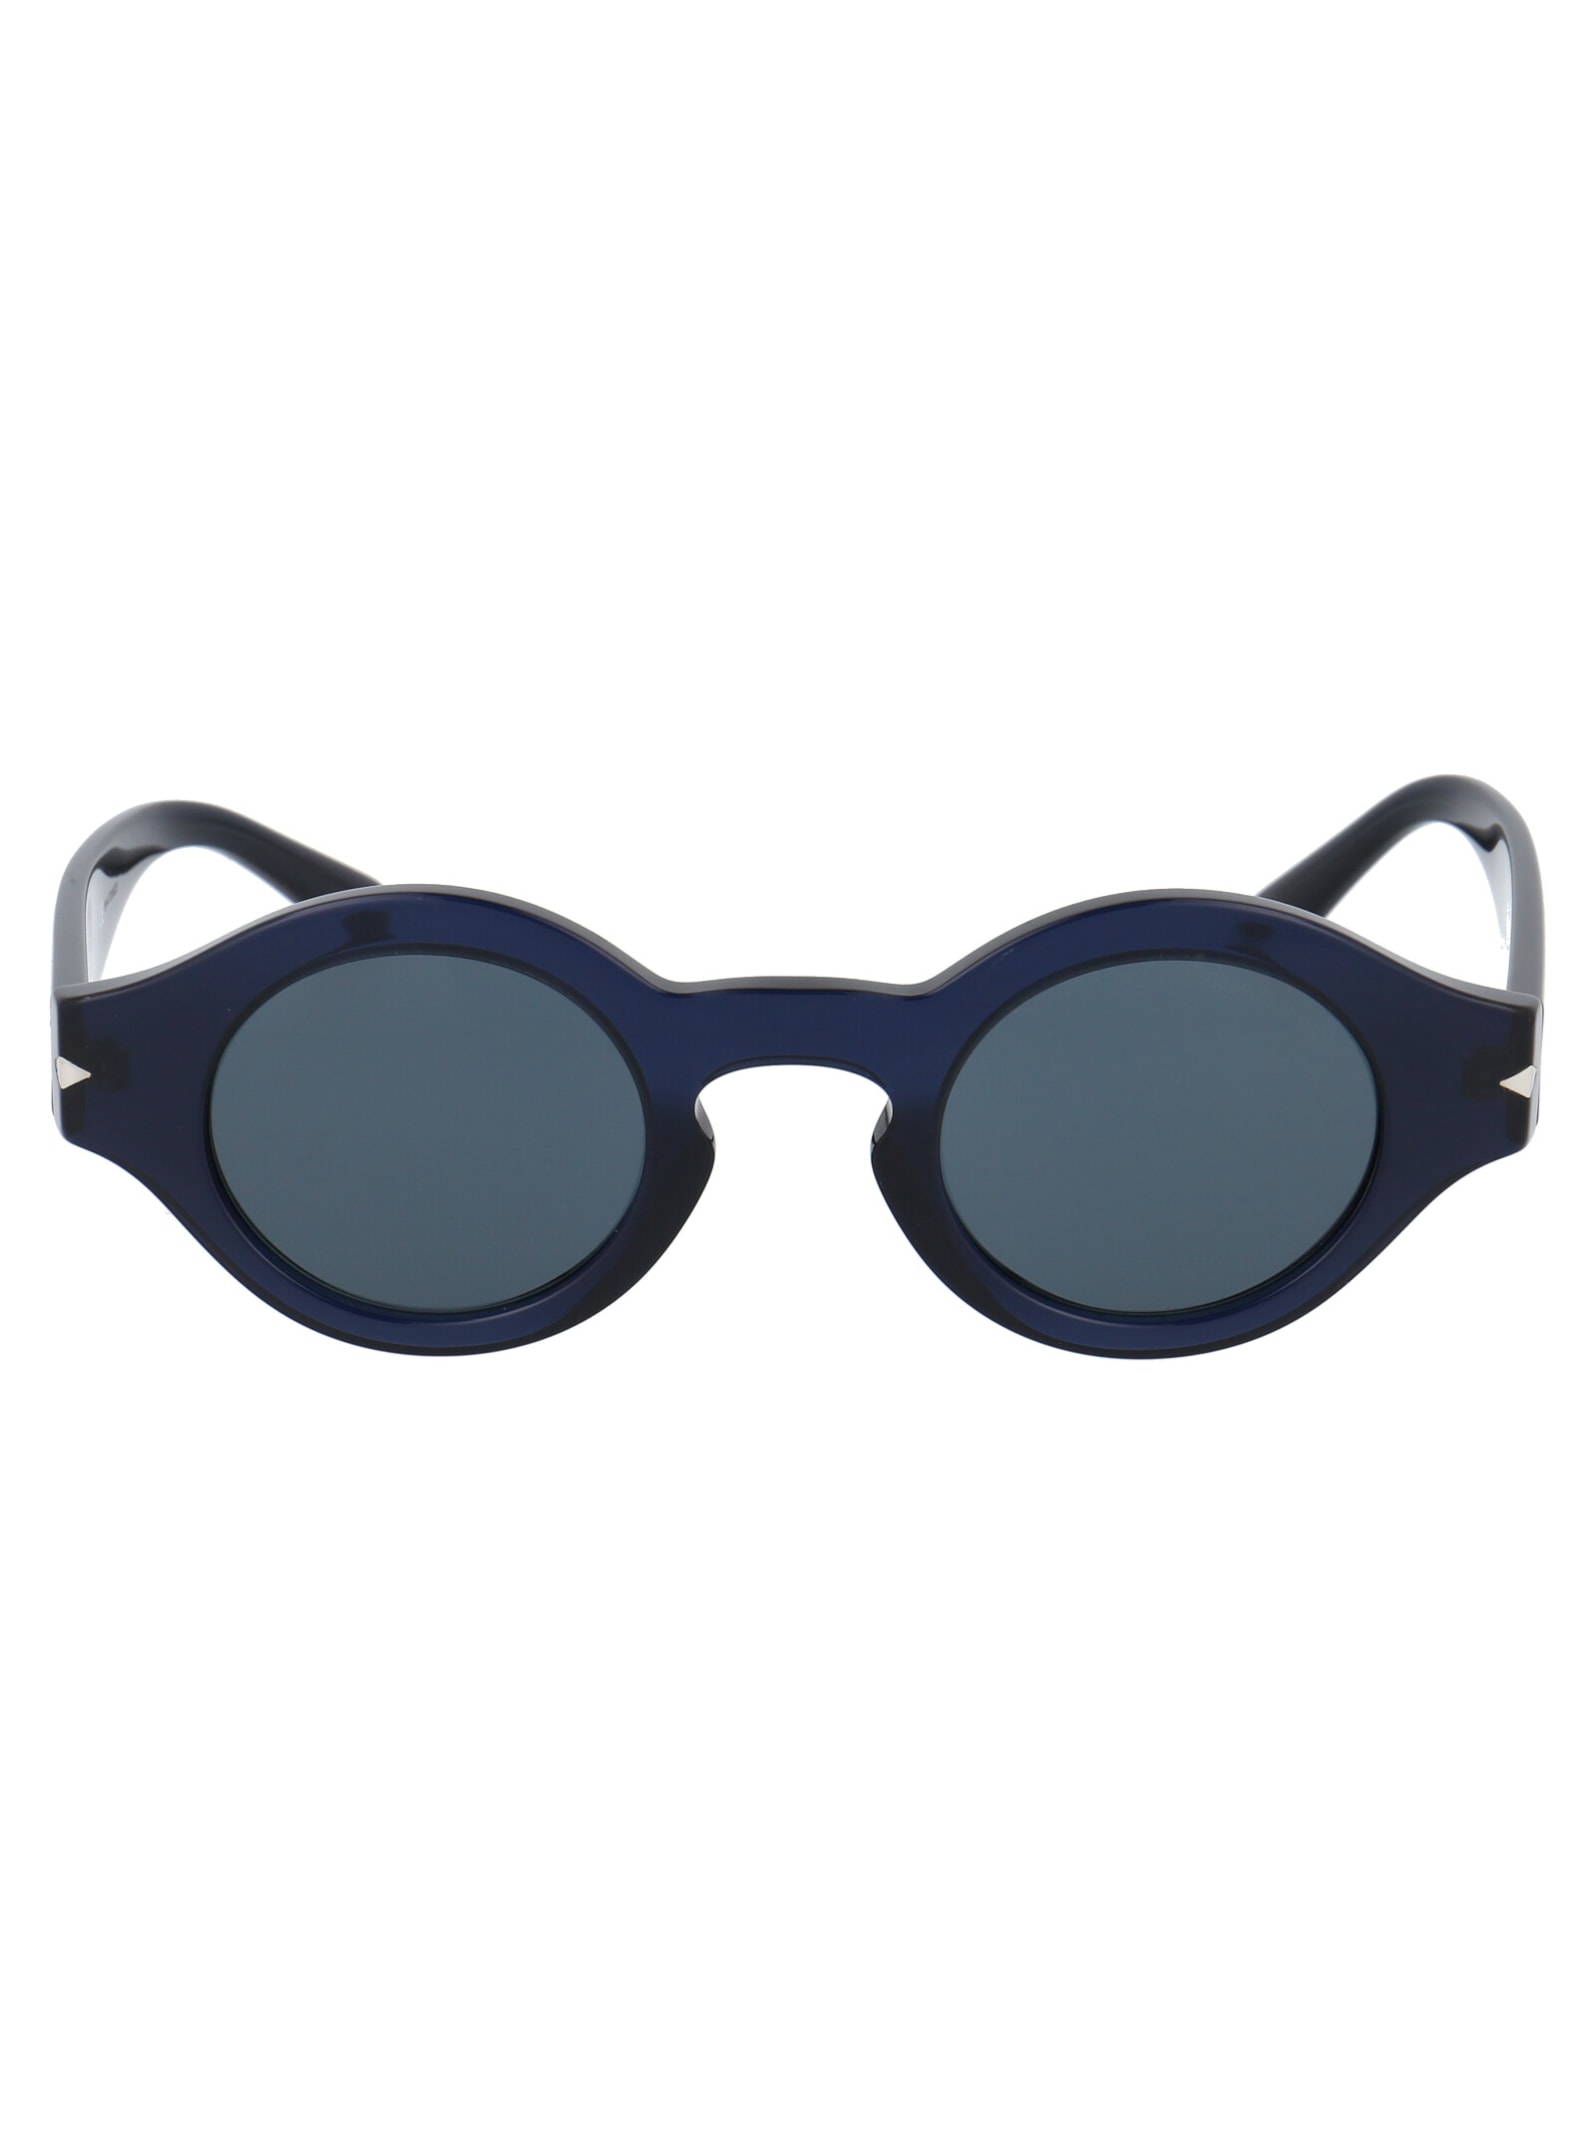 Giorgio Armani 0ar8126 Sunglasses